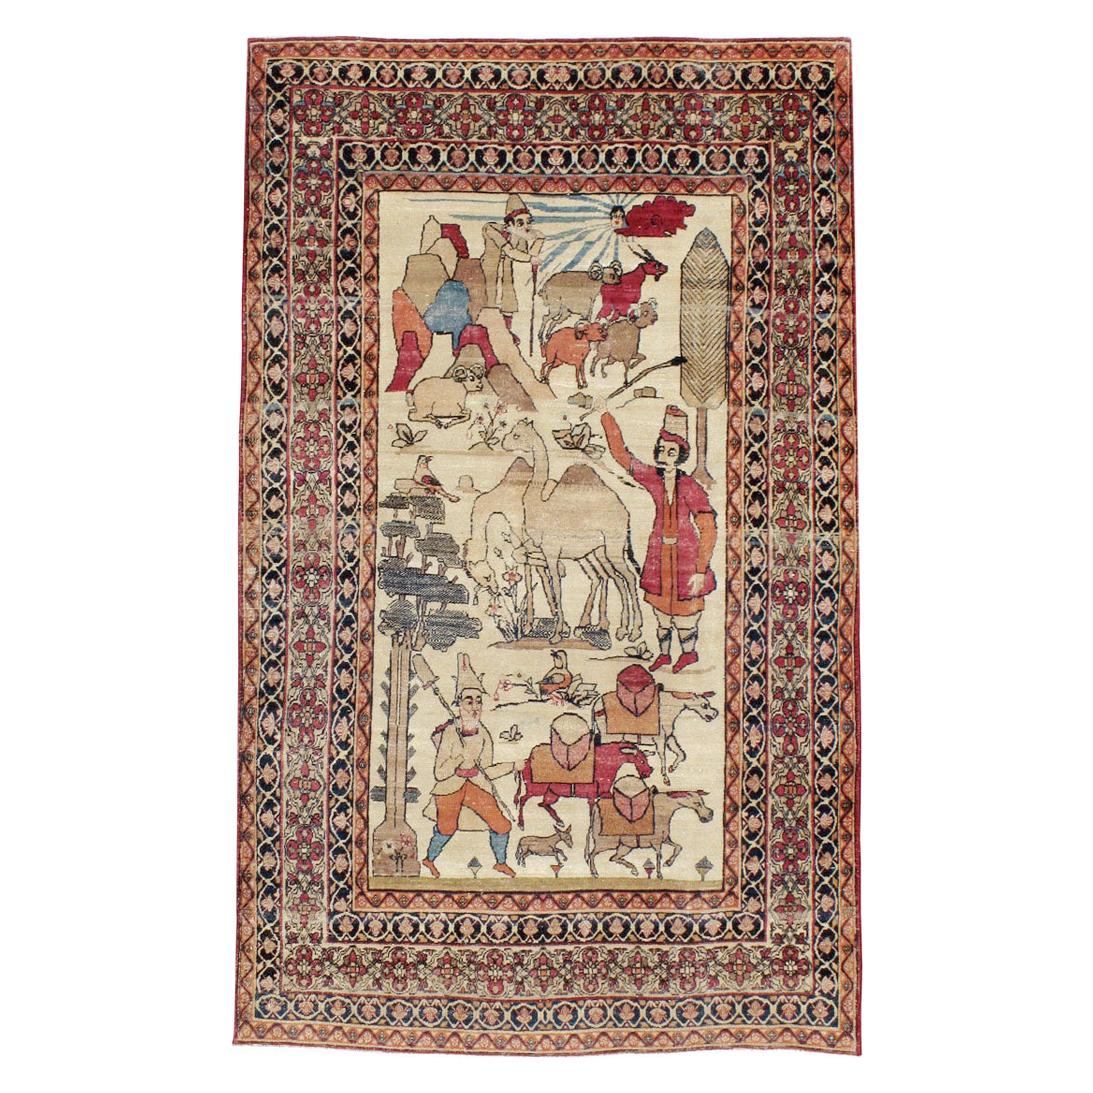 Persischer Kerman-Teppich des frühen 20. Jahrhunderts mit malerischem Nomadic Pastoralism-Akzent